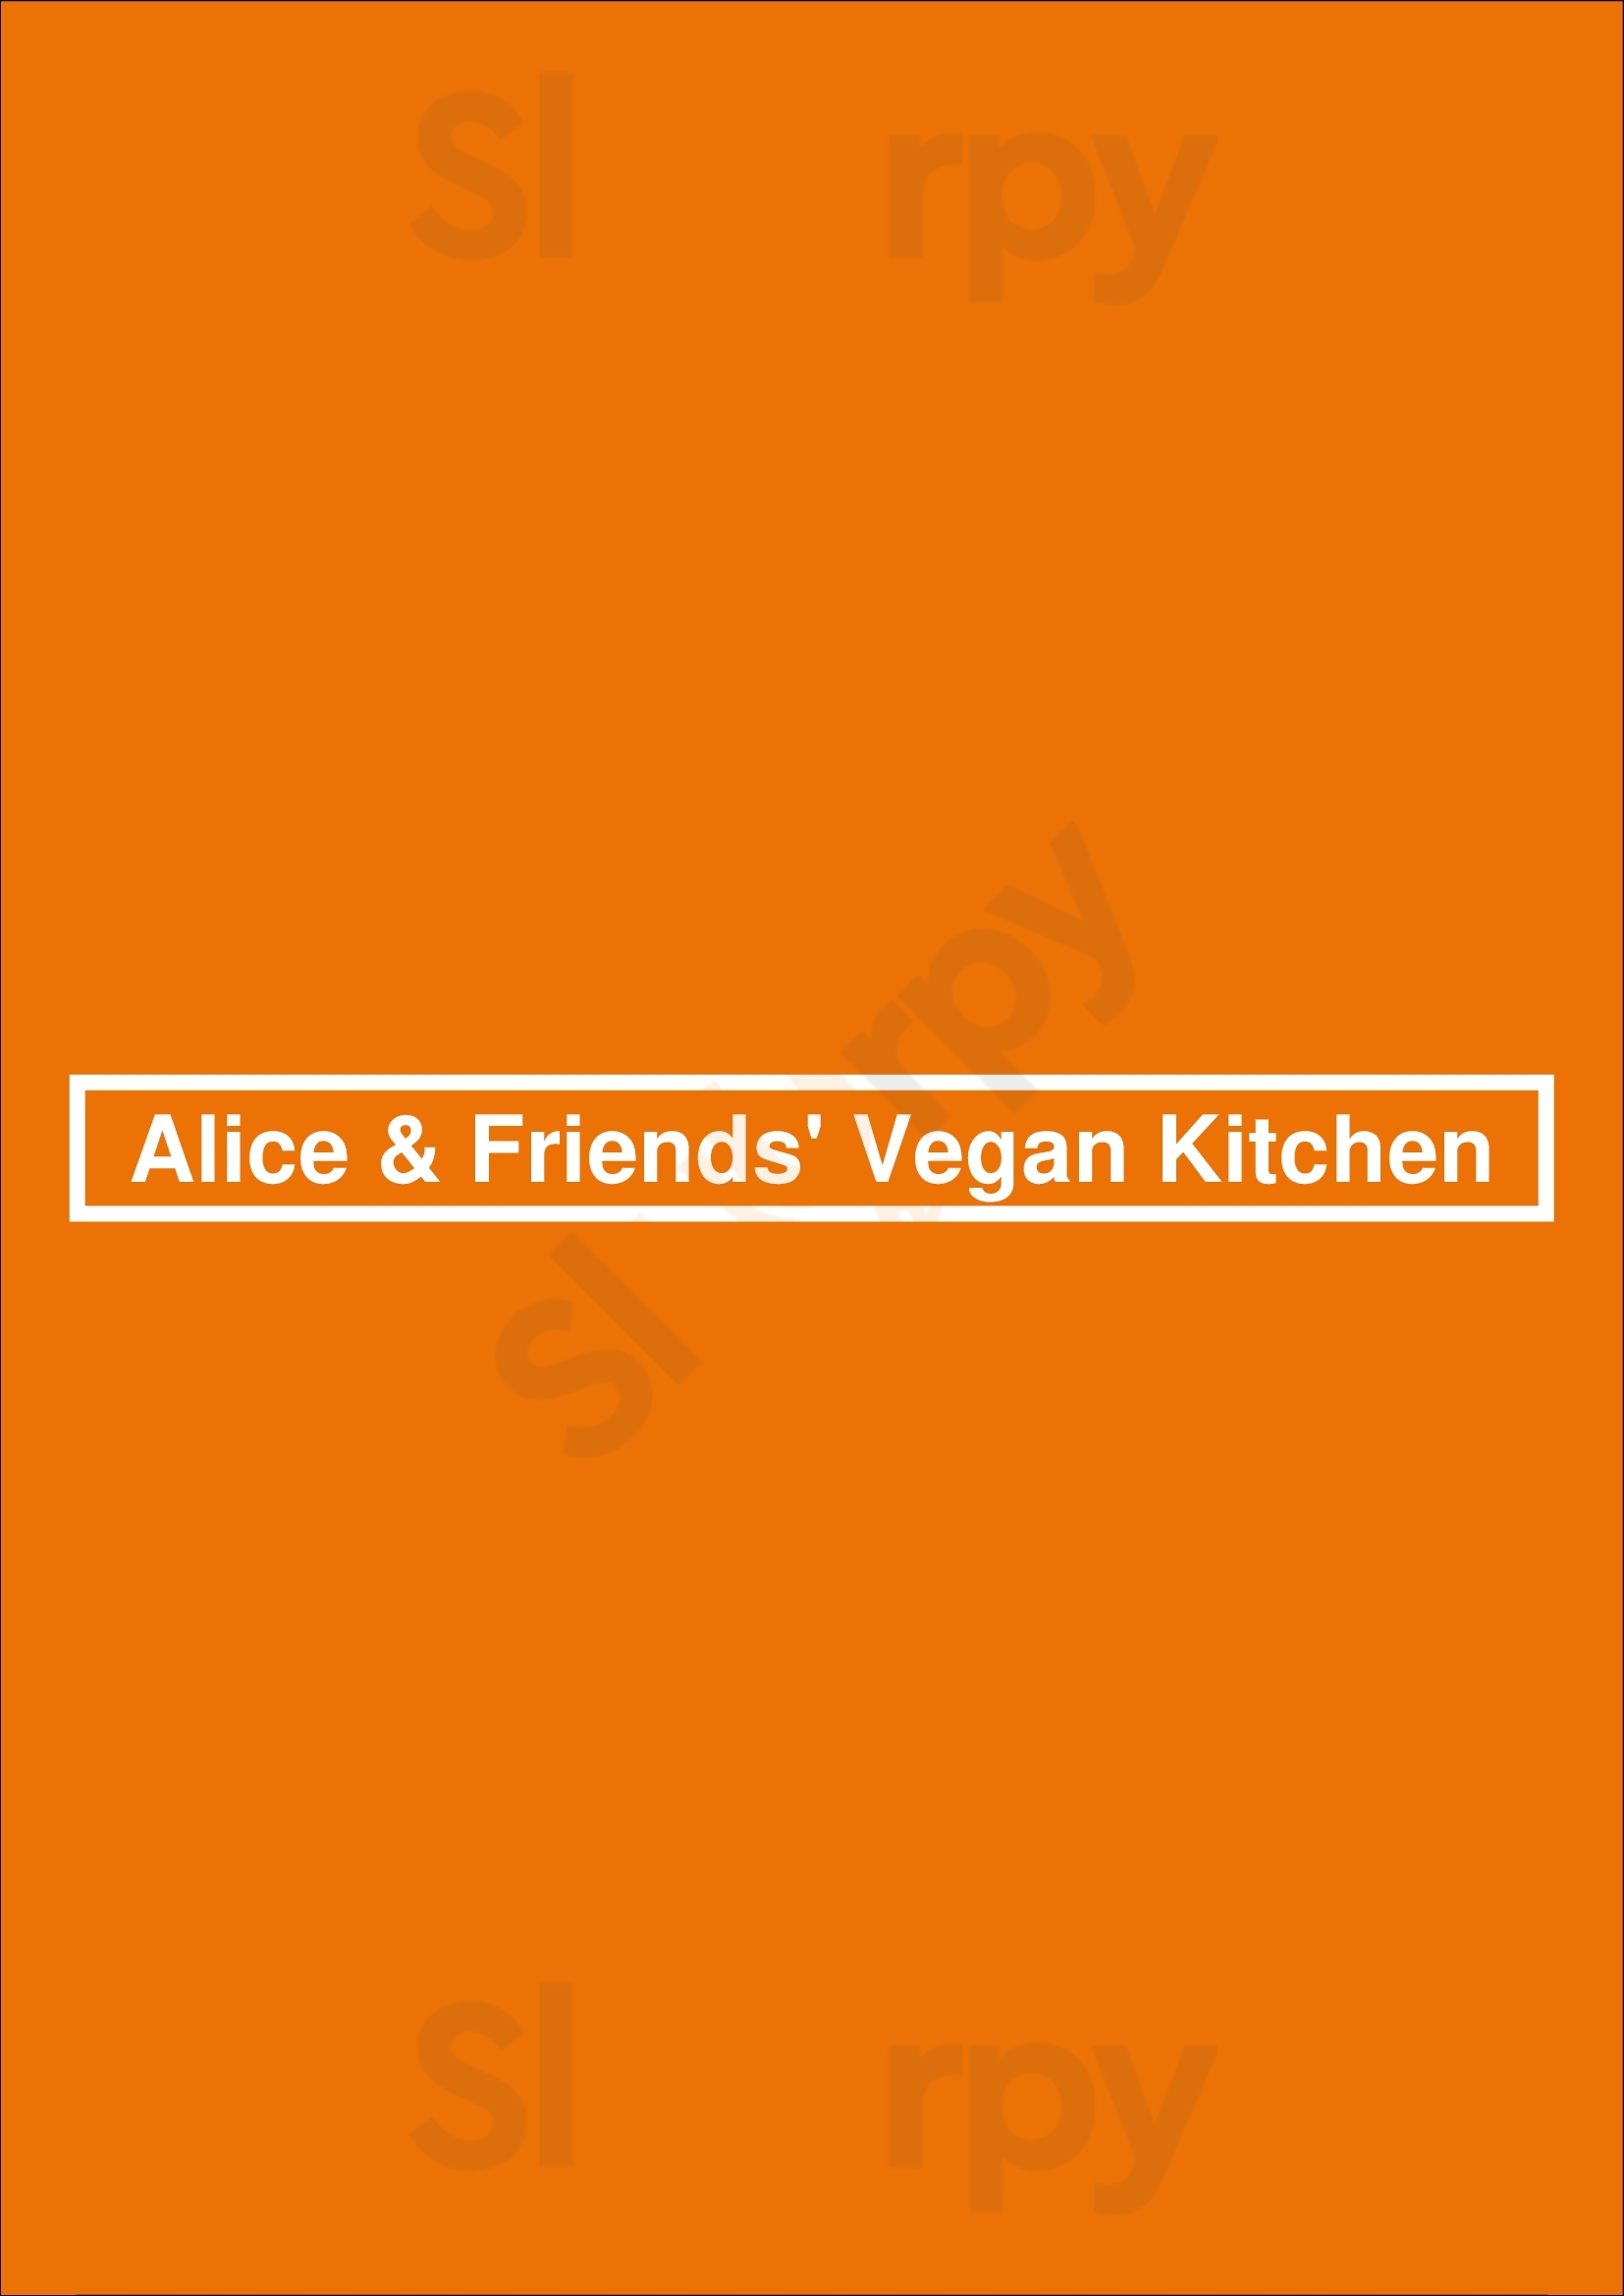 Alice & Friends' Vegan Kitchen Chicago Menu - 1